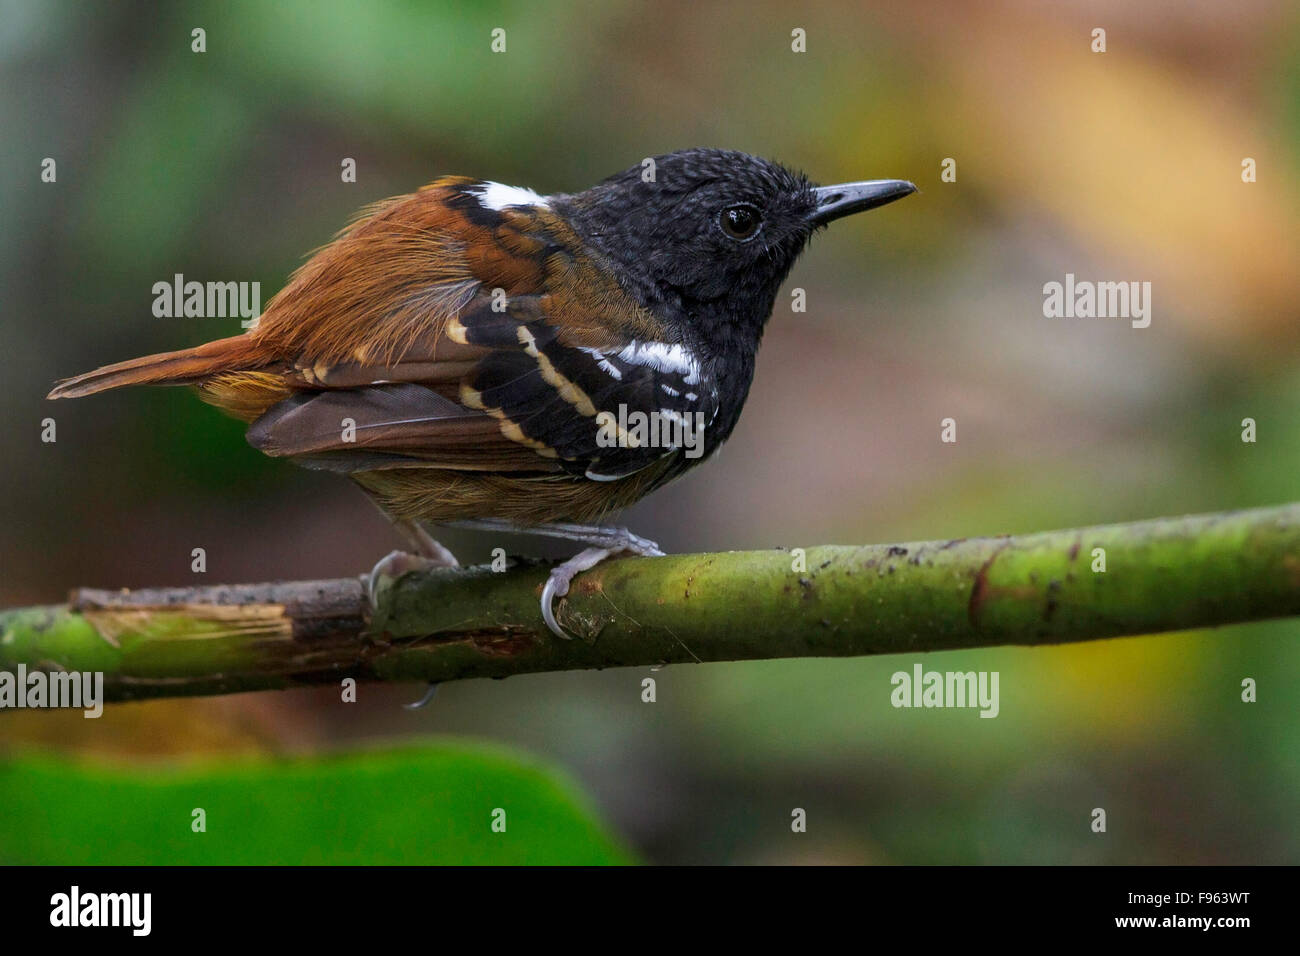 Southern Chestnuttailed Antbird (Myrmeciza hemimelaena) perched on a branch in Manu National Park, Peru. Stock Photo